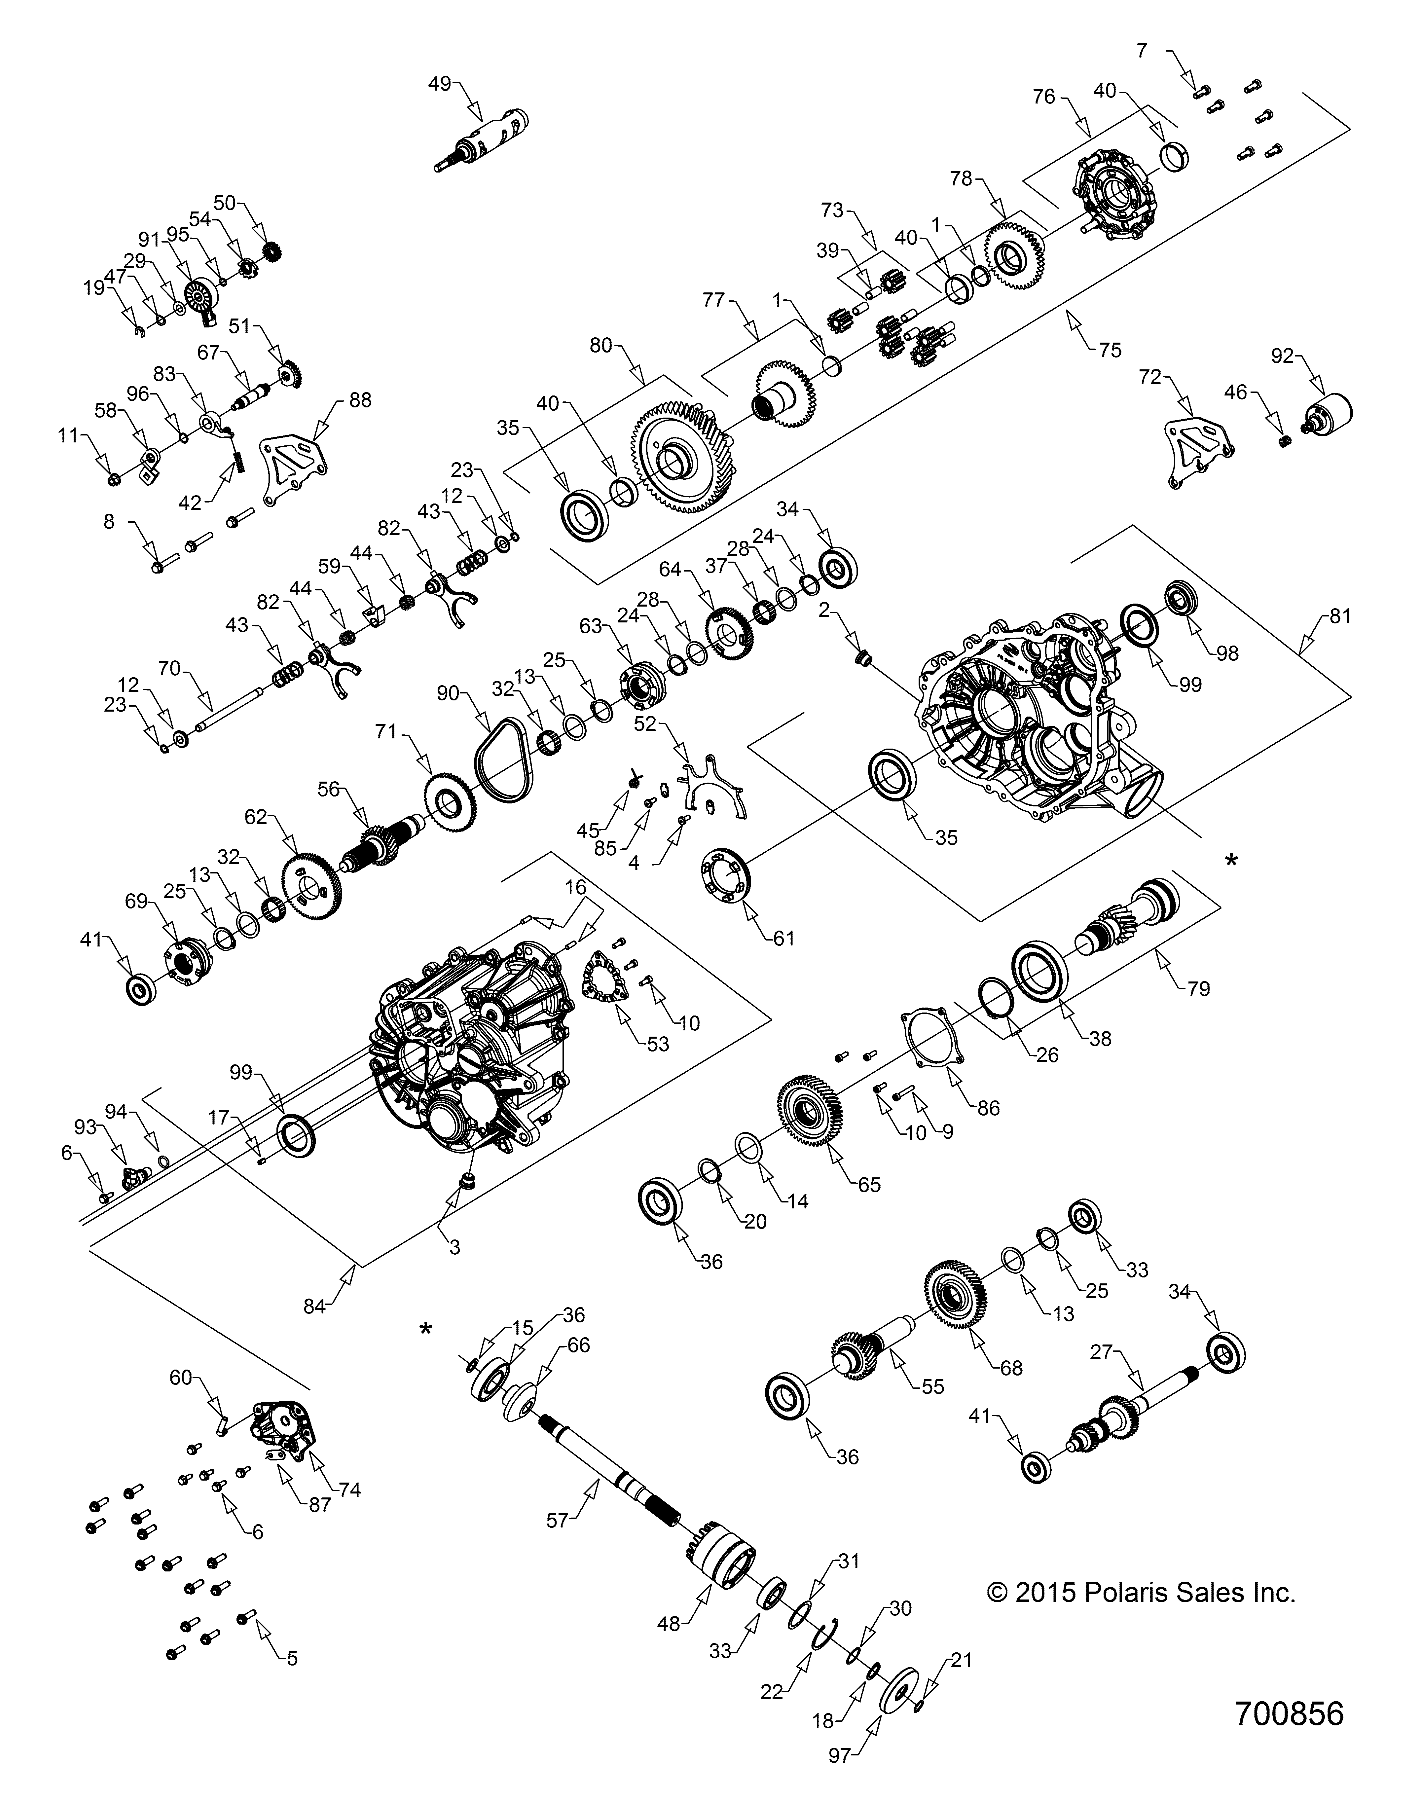 Foto diagrama Polaris que contem a peça 3235397